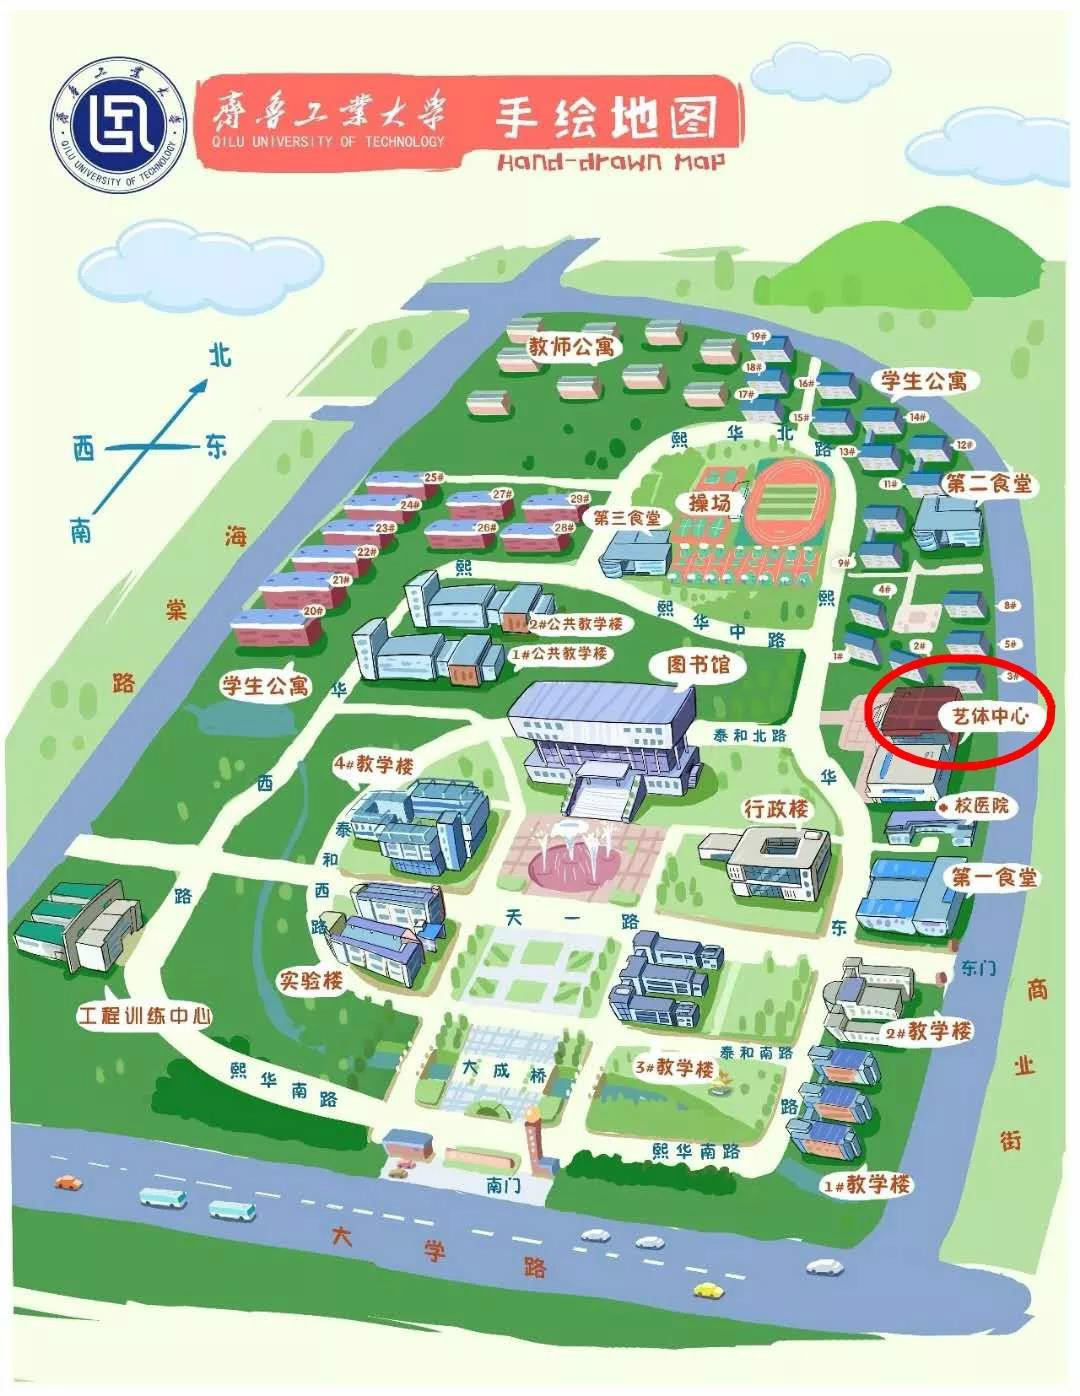 齐鲁工业大学全景地图图片